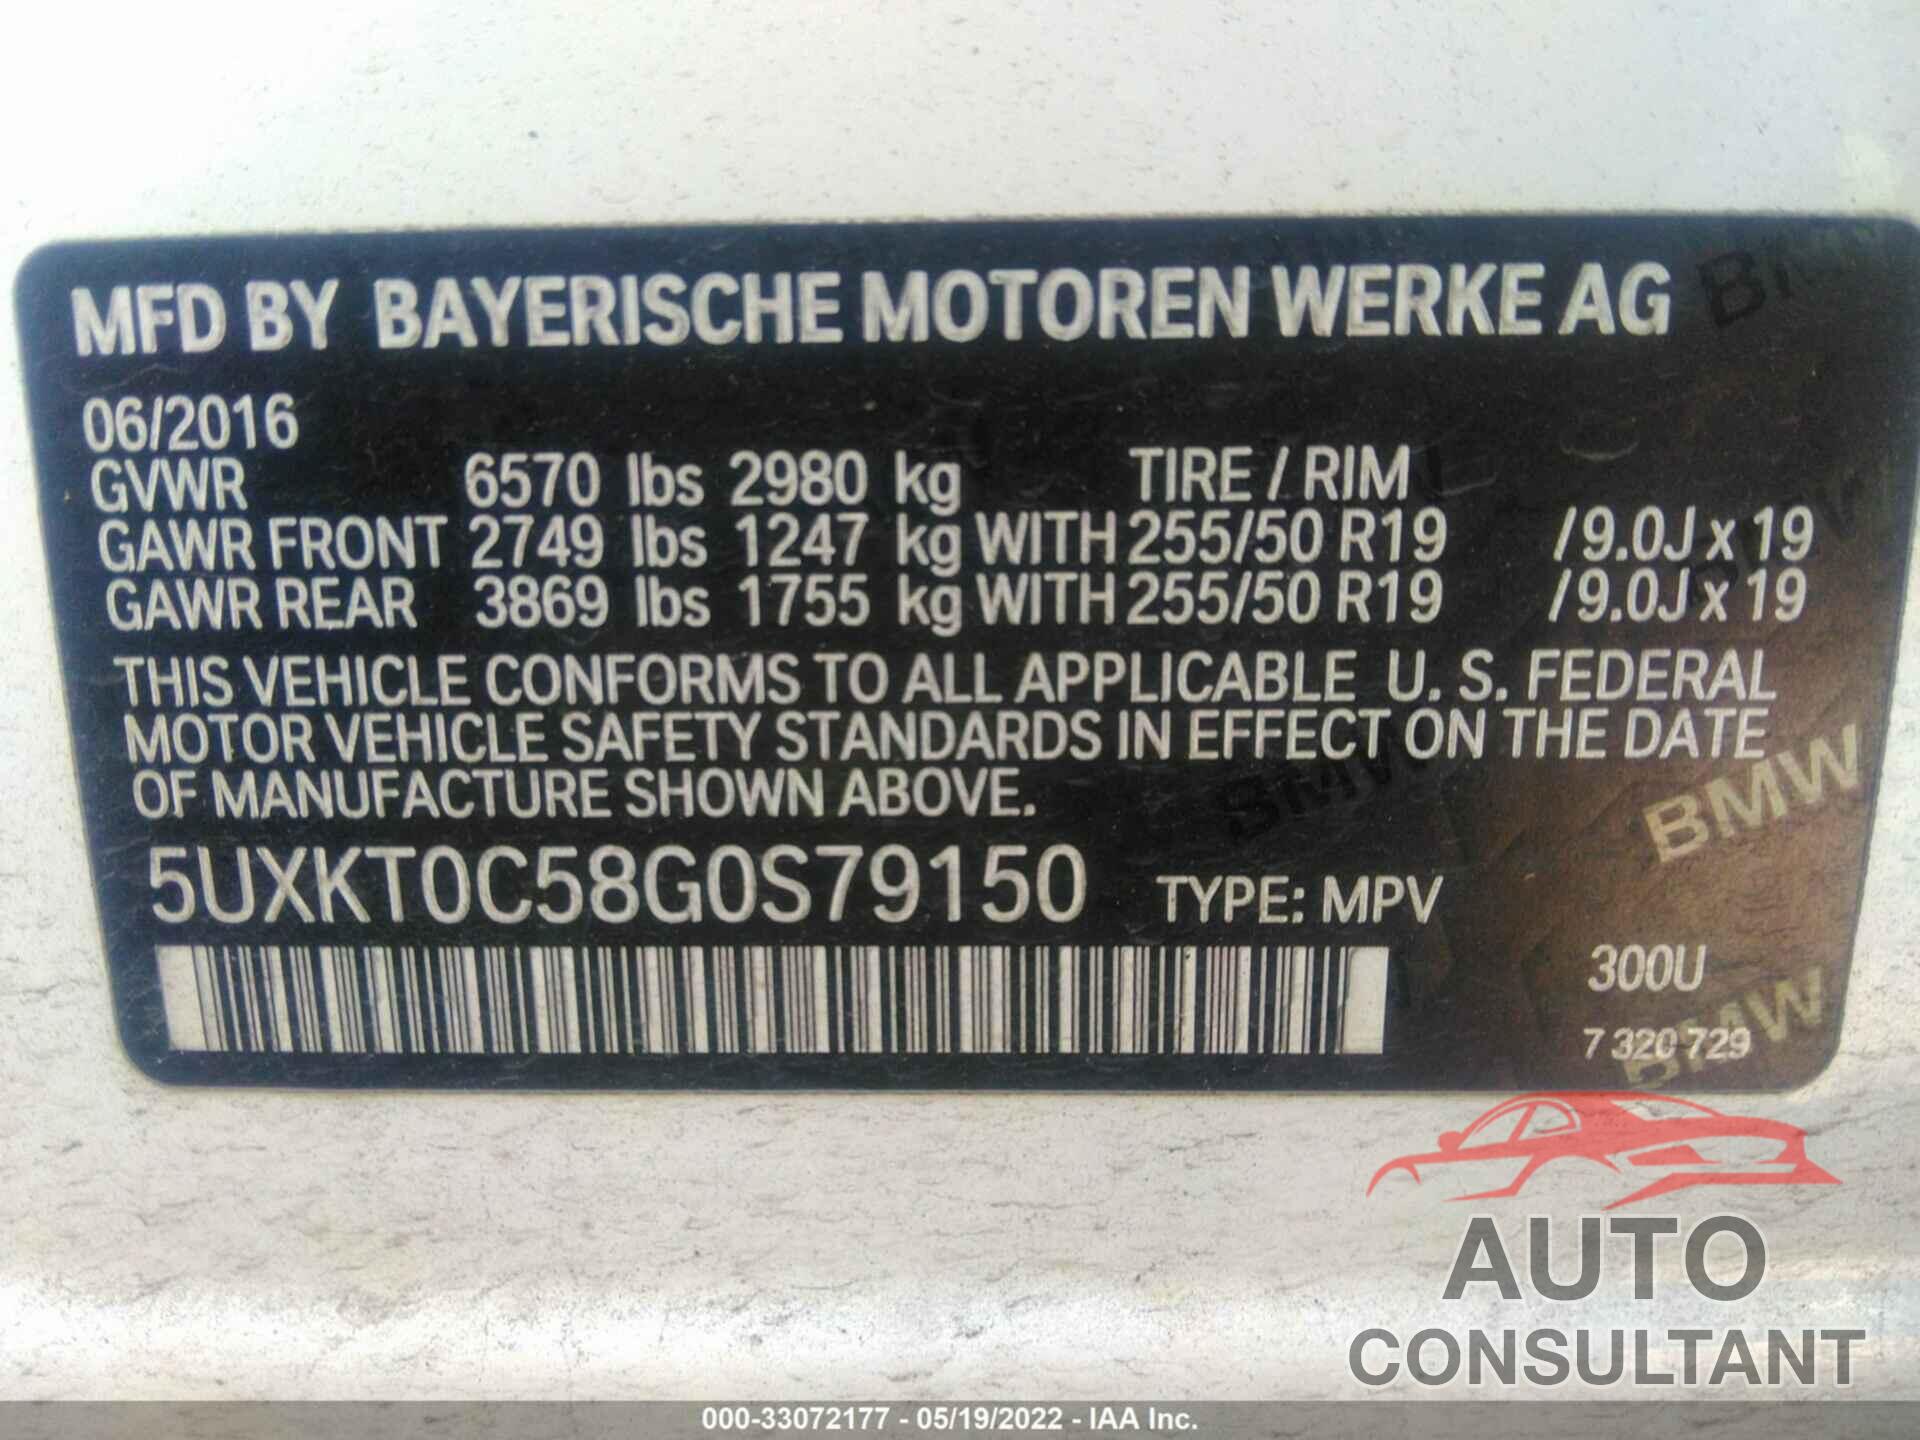 BMW X5 EDRIVE 2016 - 5UXKT0C58G0S79150